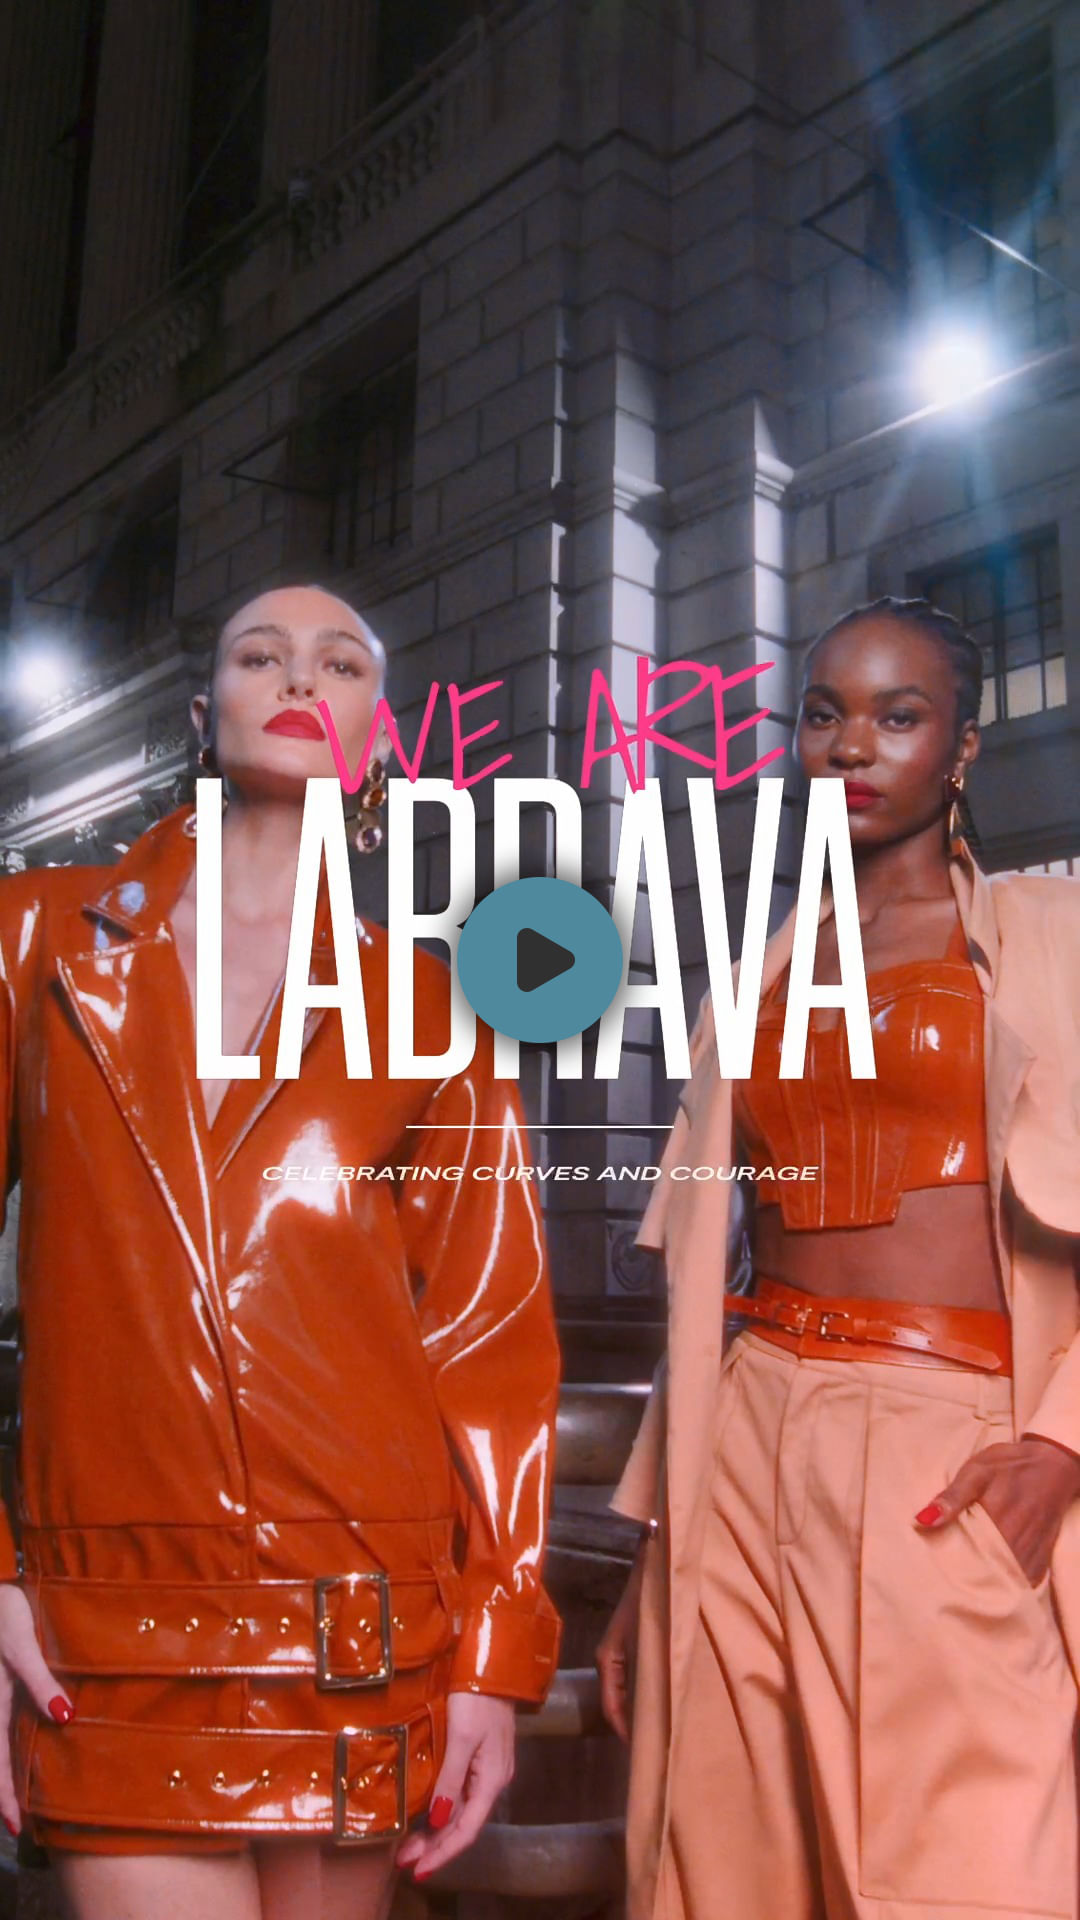 Lançamento da nova coleção da marca Labrava